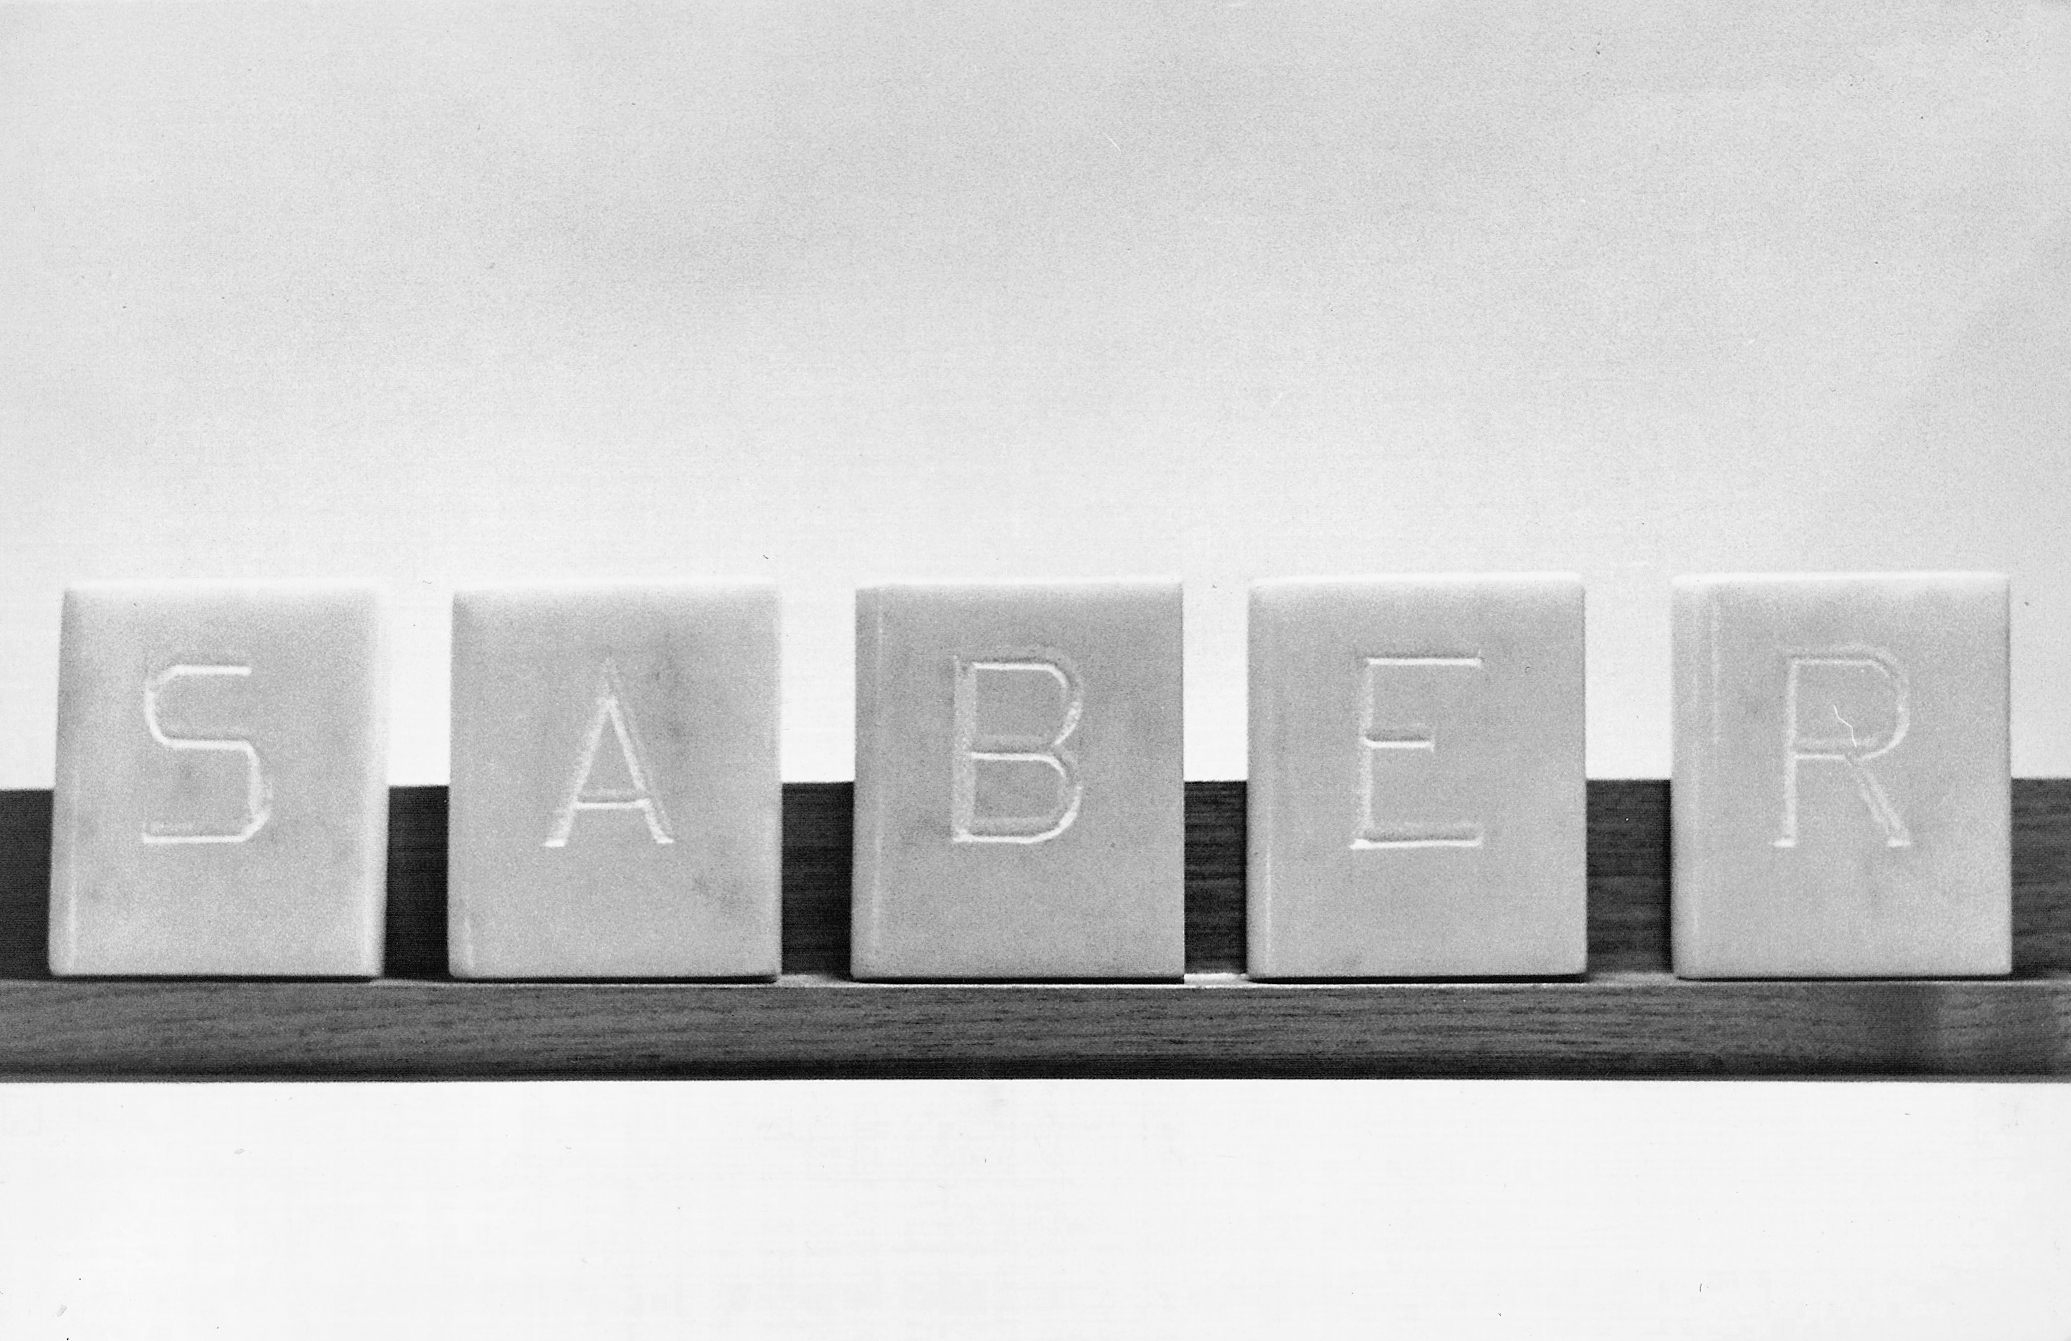 Abecedario, SABER, libros en mármol de Carrara 6 cm x 5 cm x 2cm, 1984